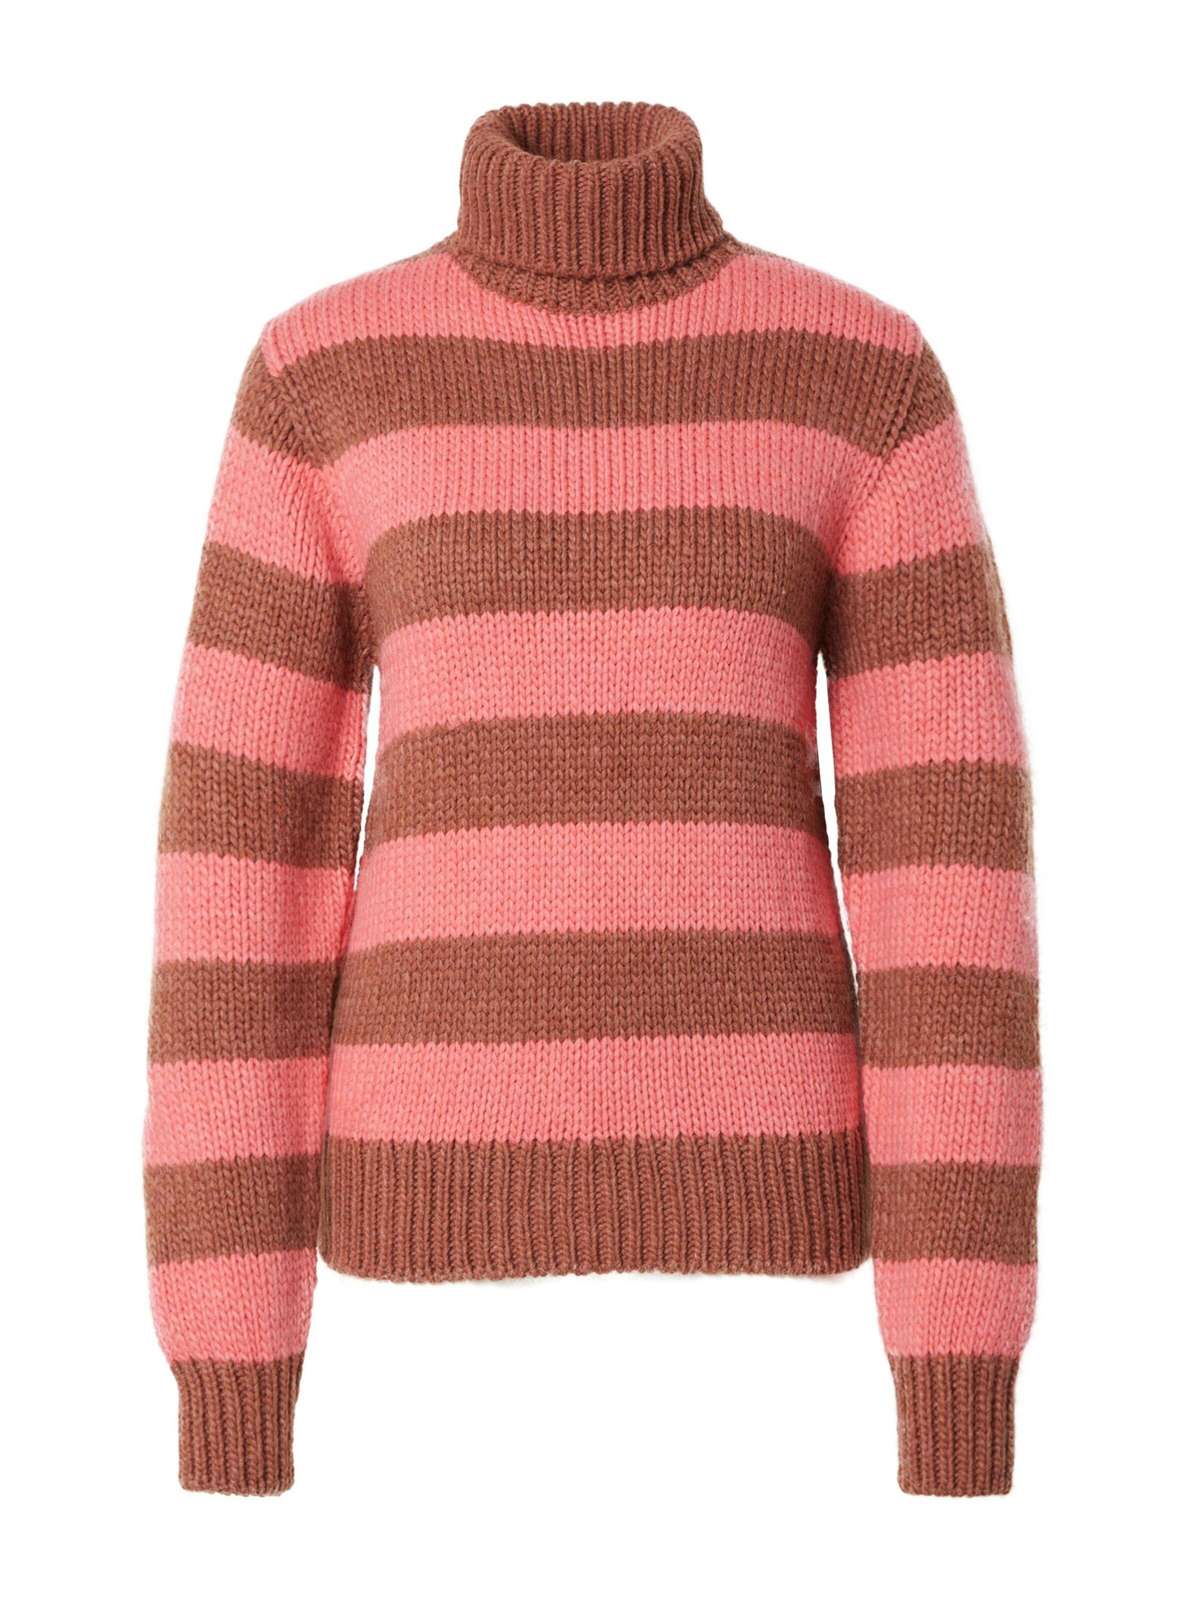 Вязаный свитер Суки (1 шт.) однотонный/без деталей